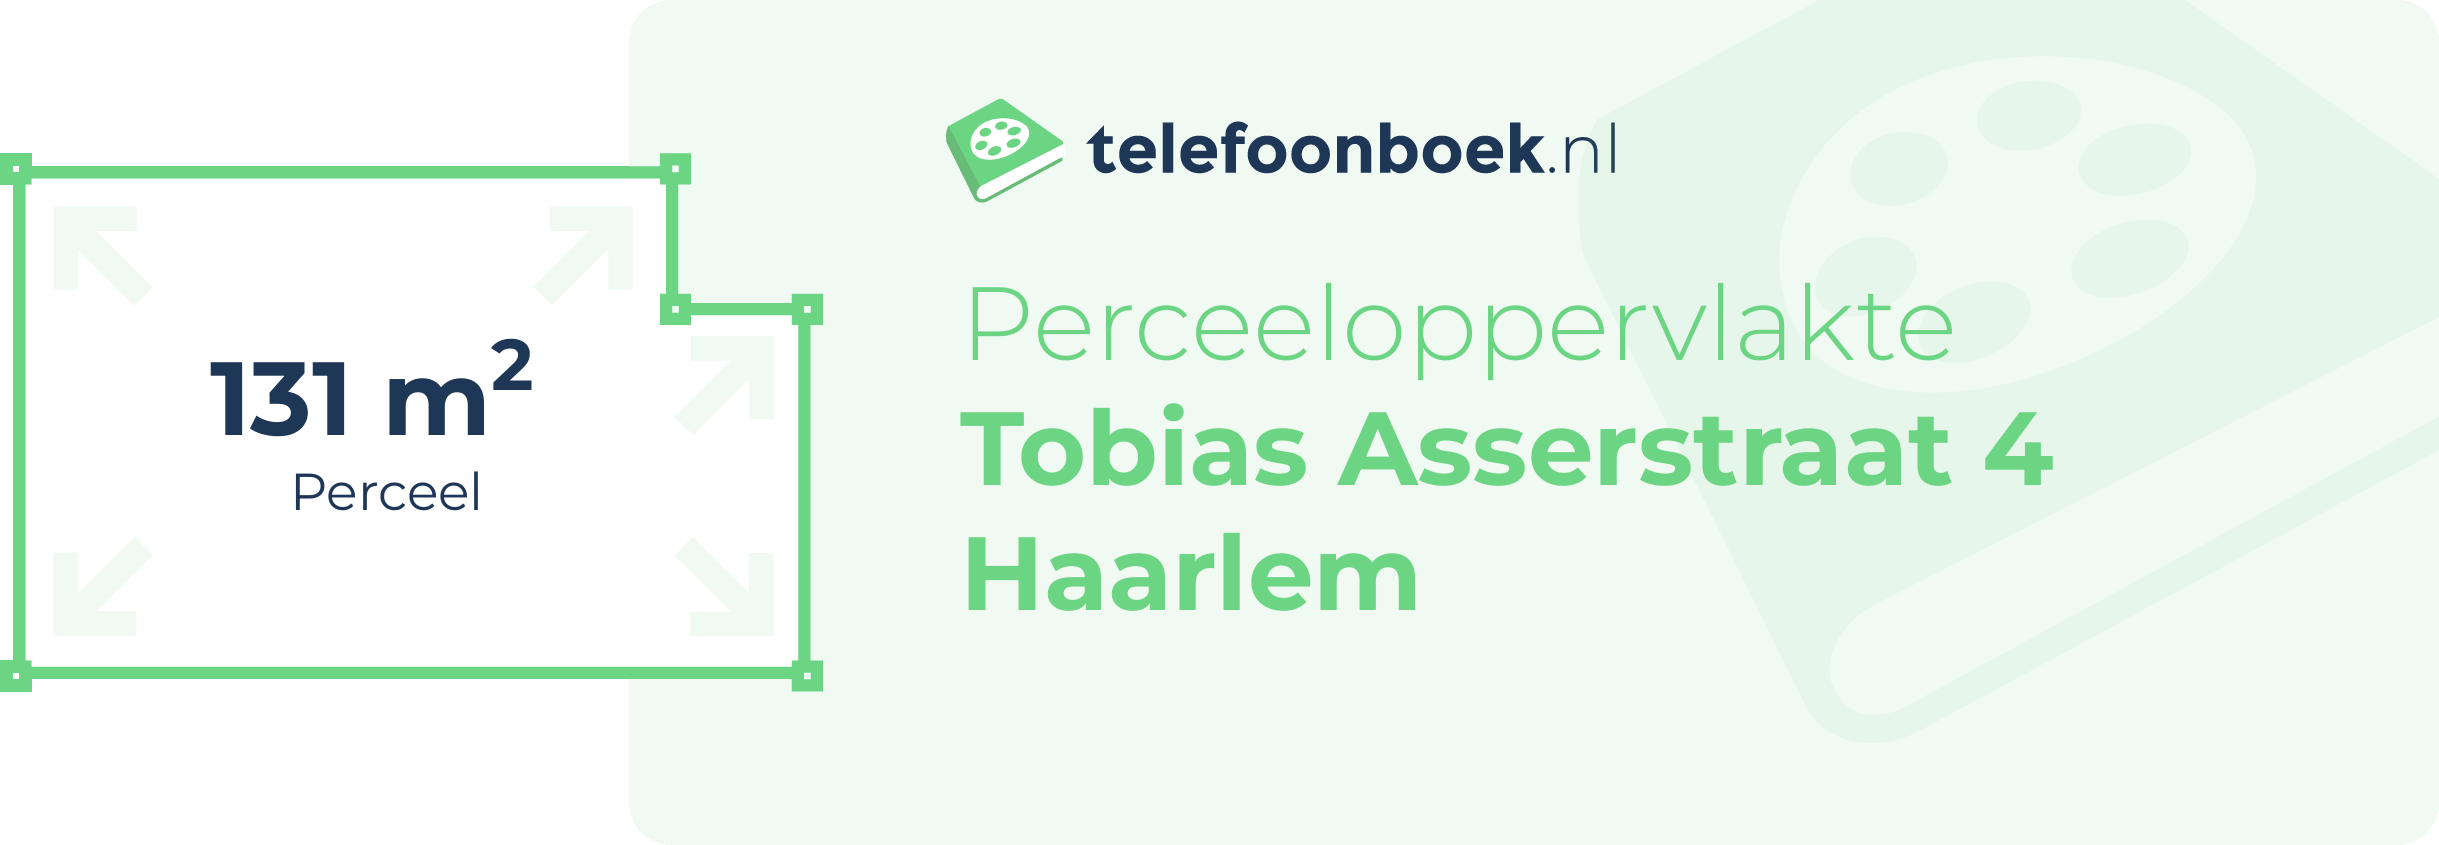 Perceeloppervlakte Tobias Asserstraat 4 Haarlem